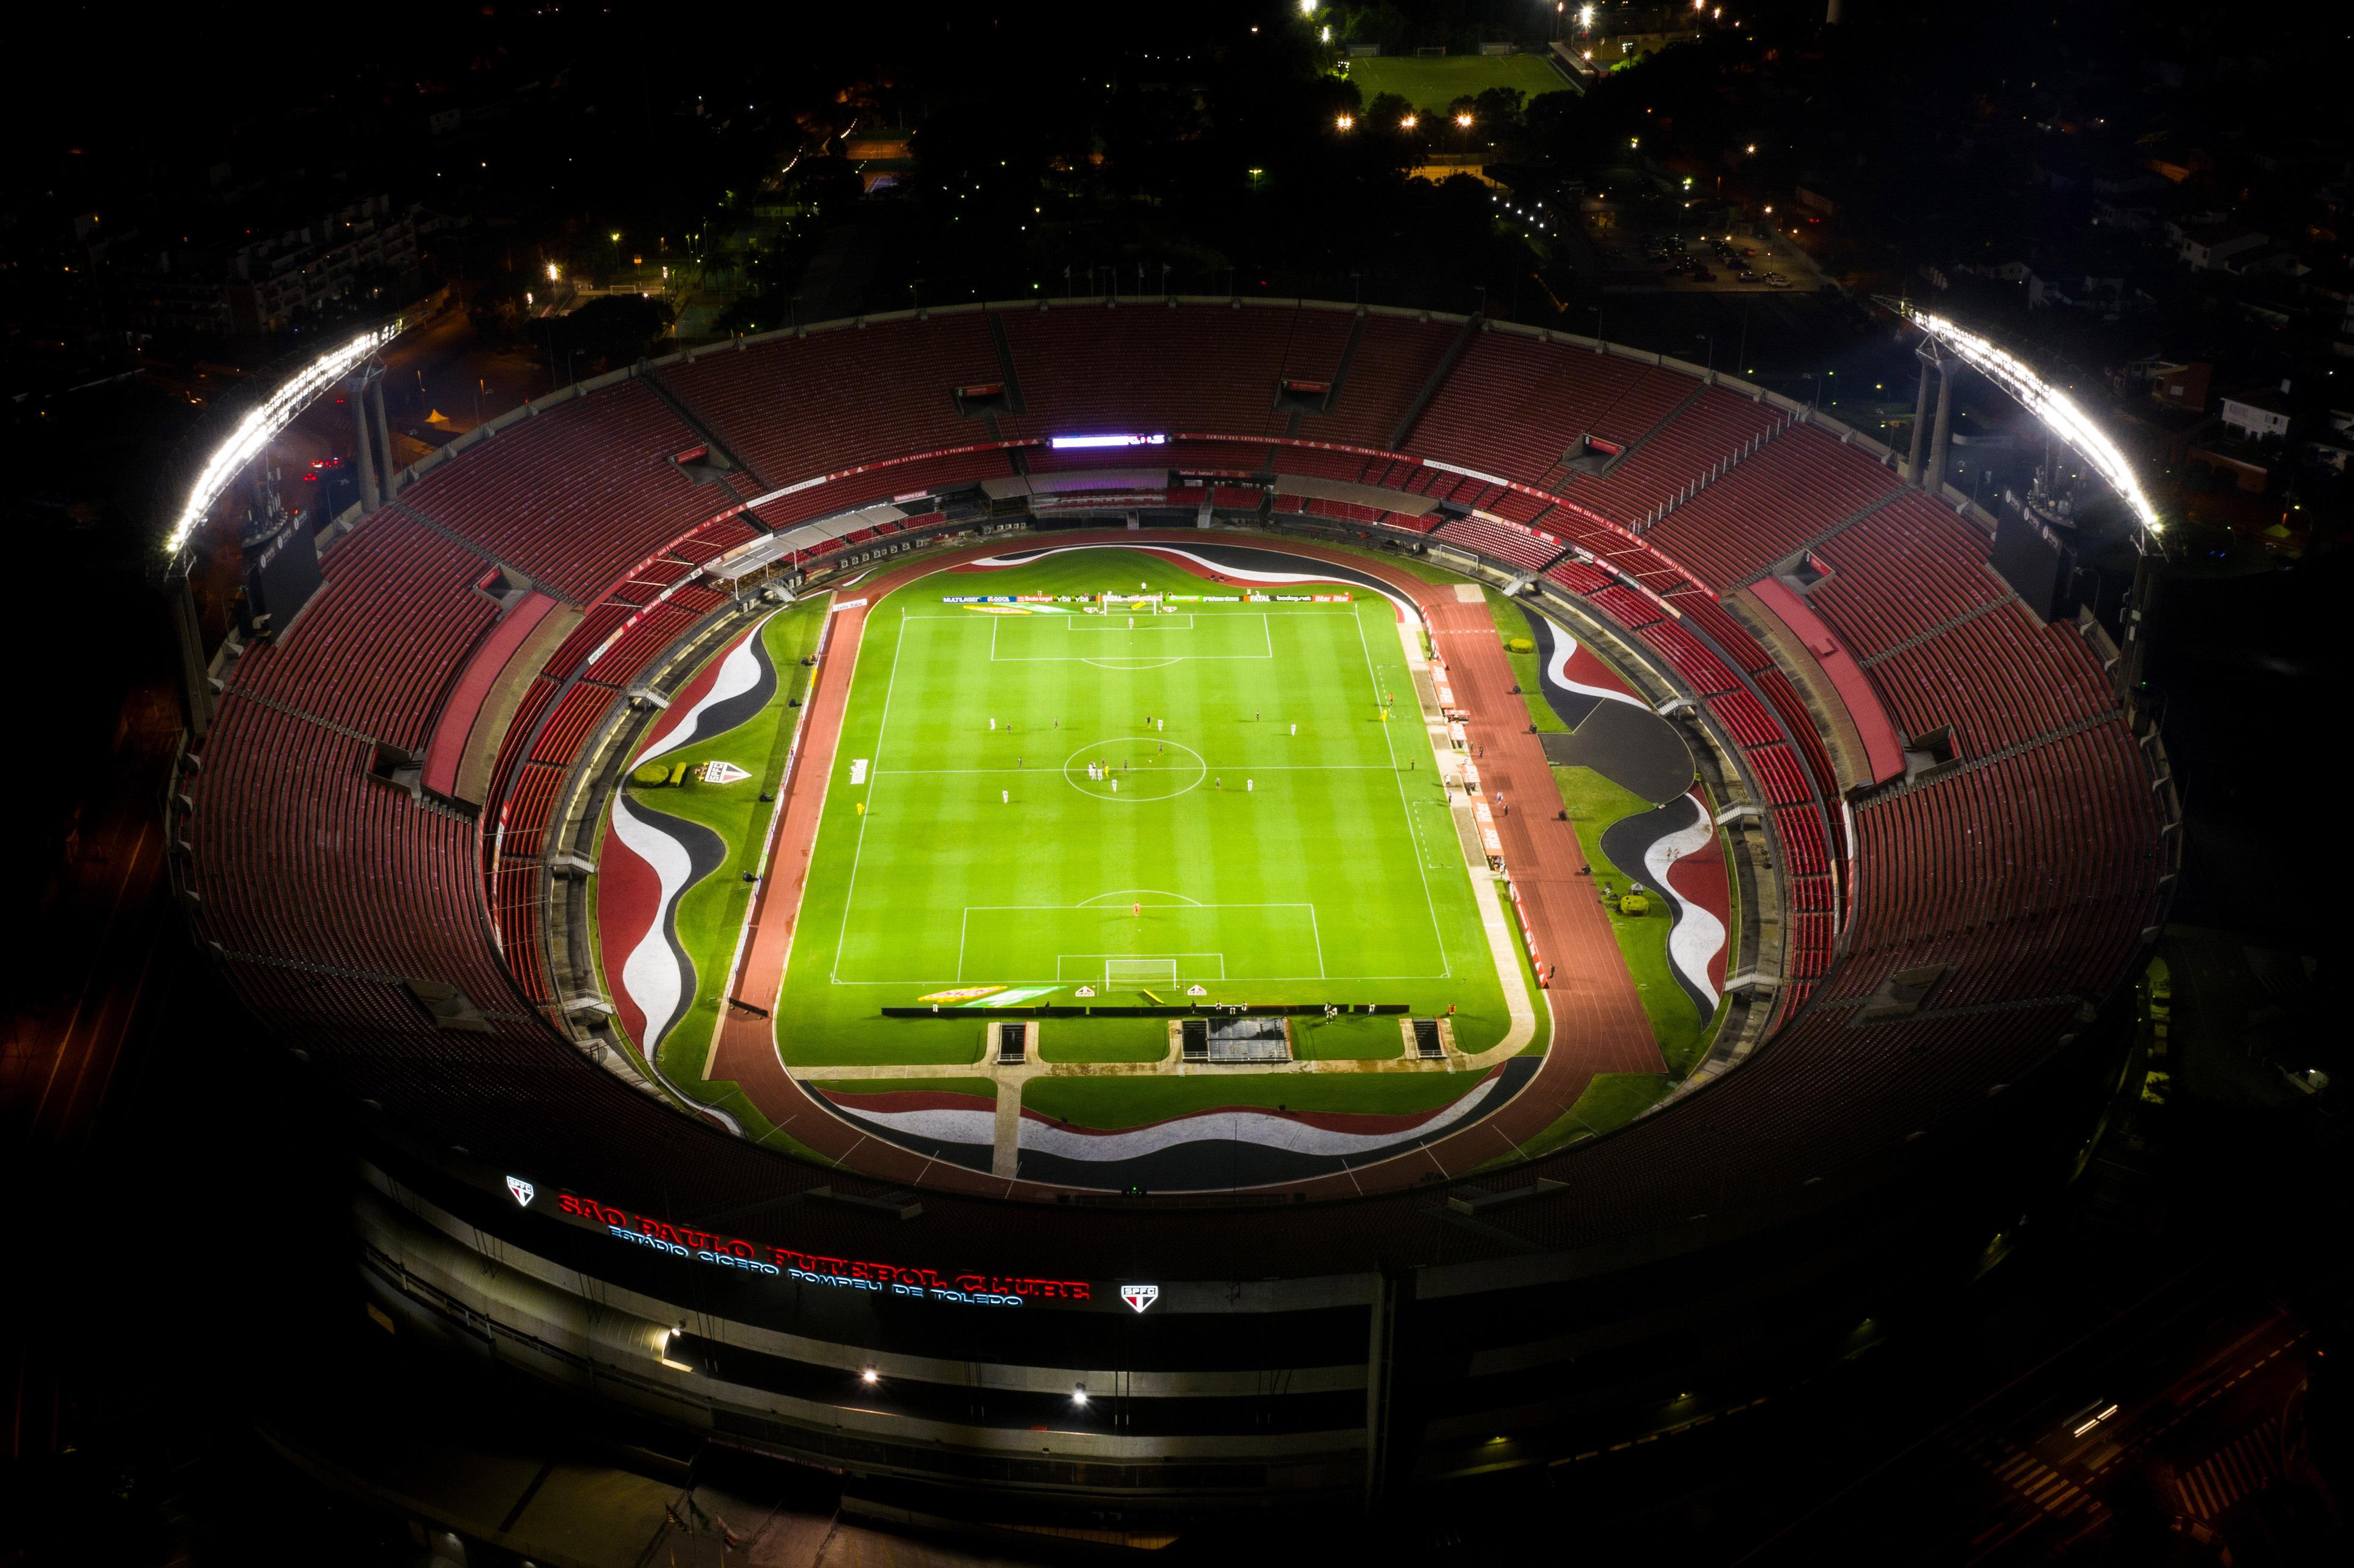 Quando será São Paulo x Coritiba, jogo adiado pela final da Sul-Americana  2022?